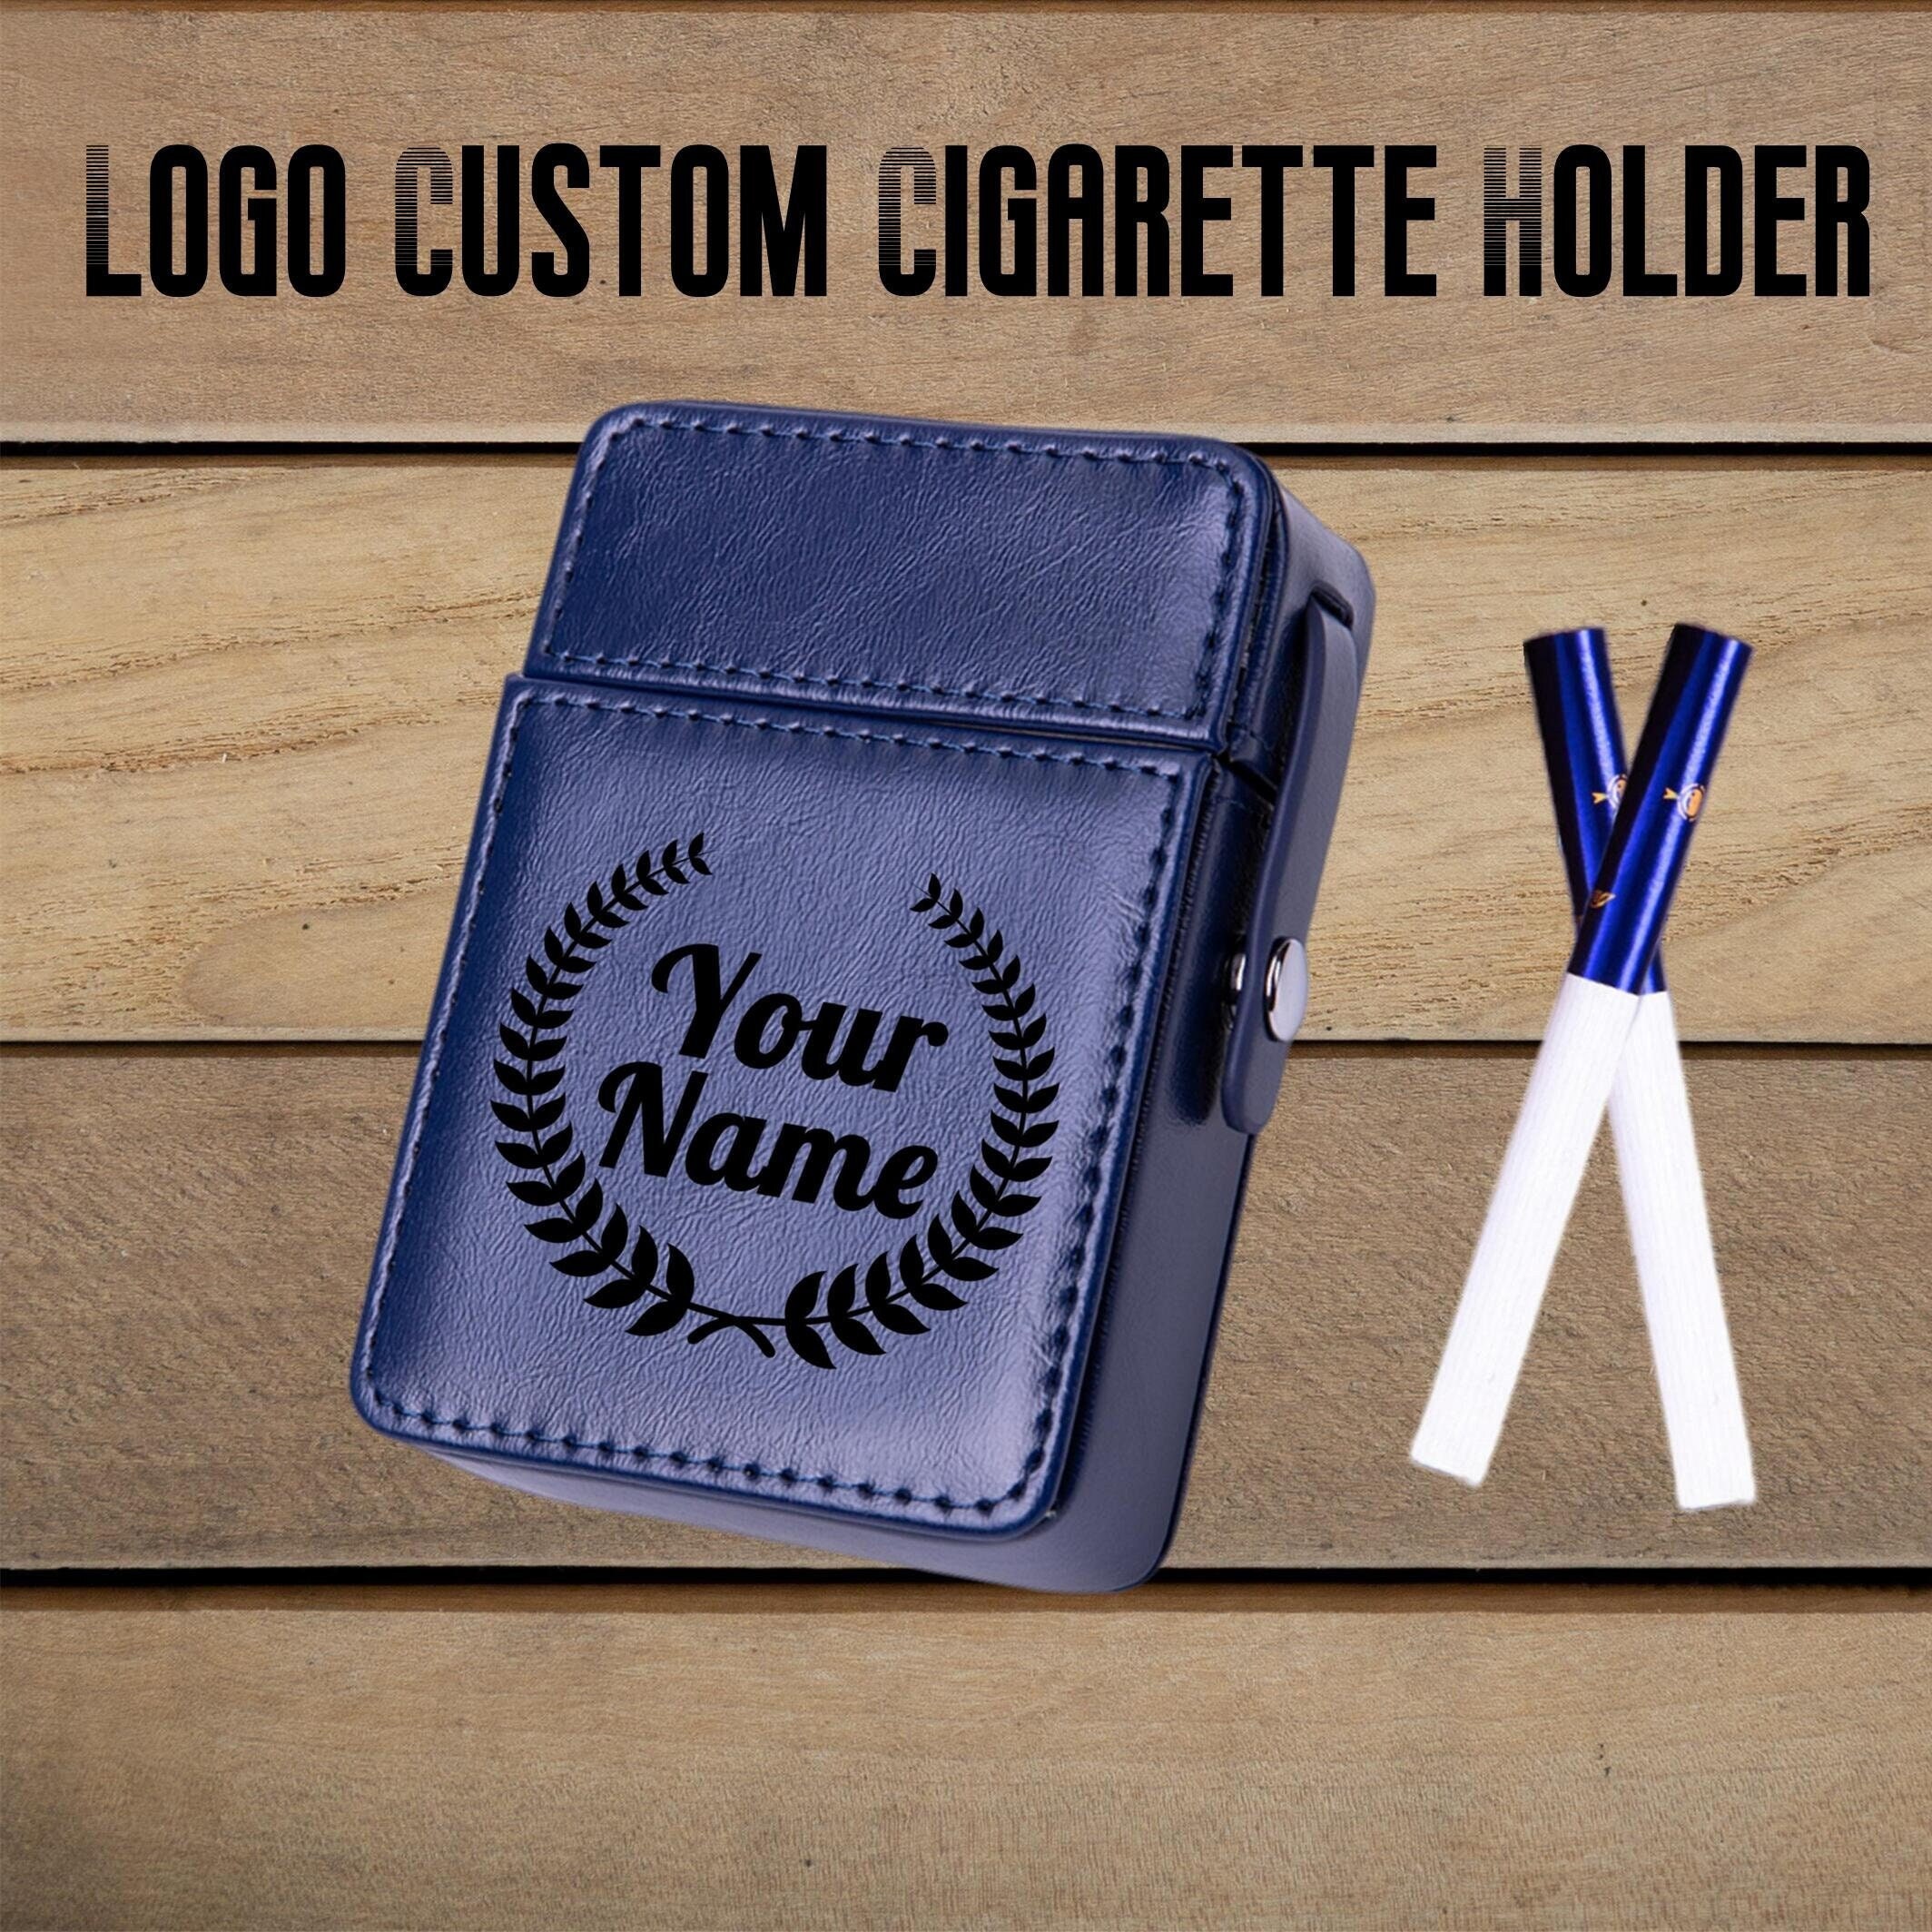 Louis Vuitton Cigarette Case Lighter  Leather Cigarette Lighter Case -  Portable - Aliexpress